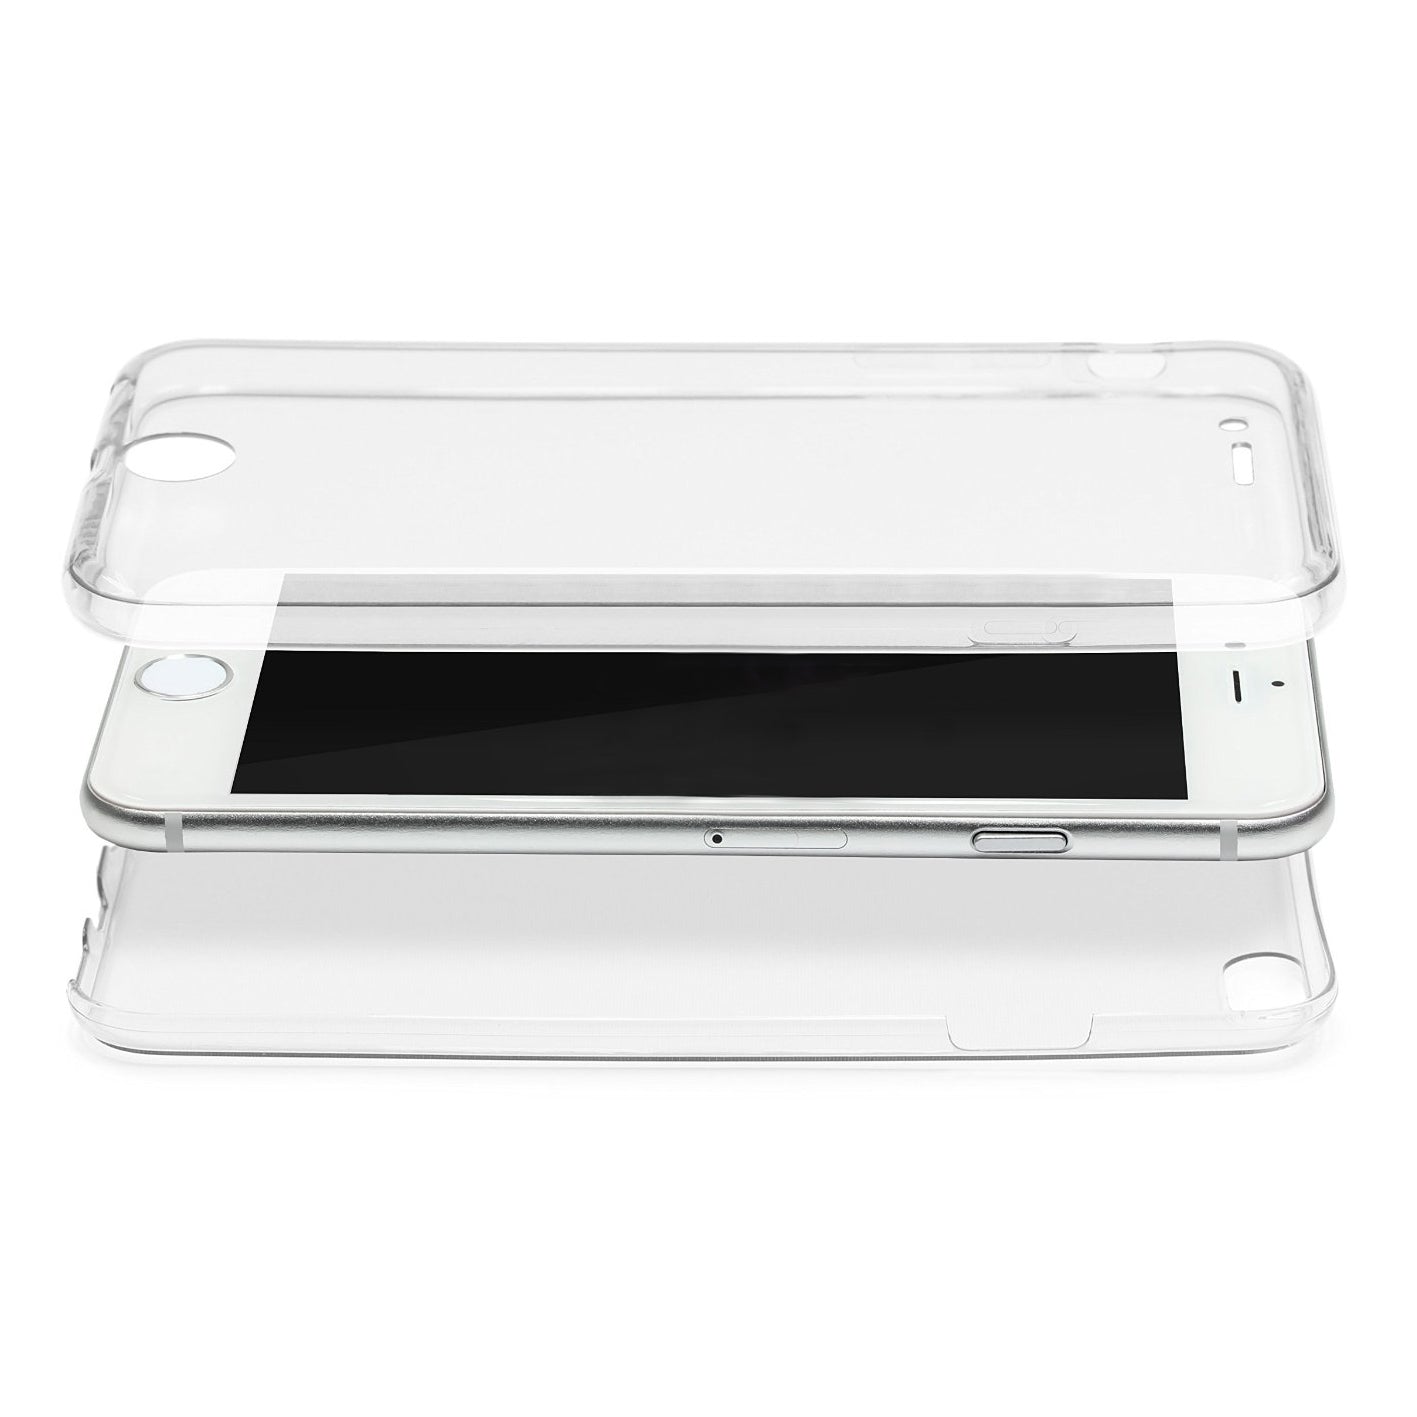 iphone-6-cases570363e7c99d3